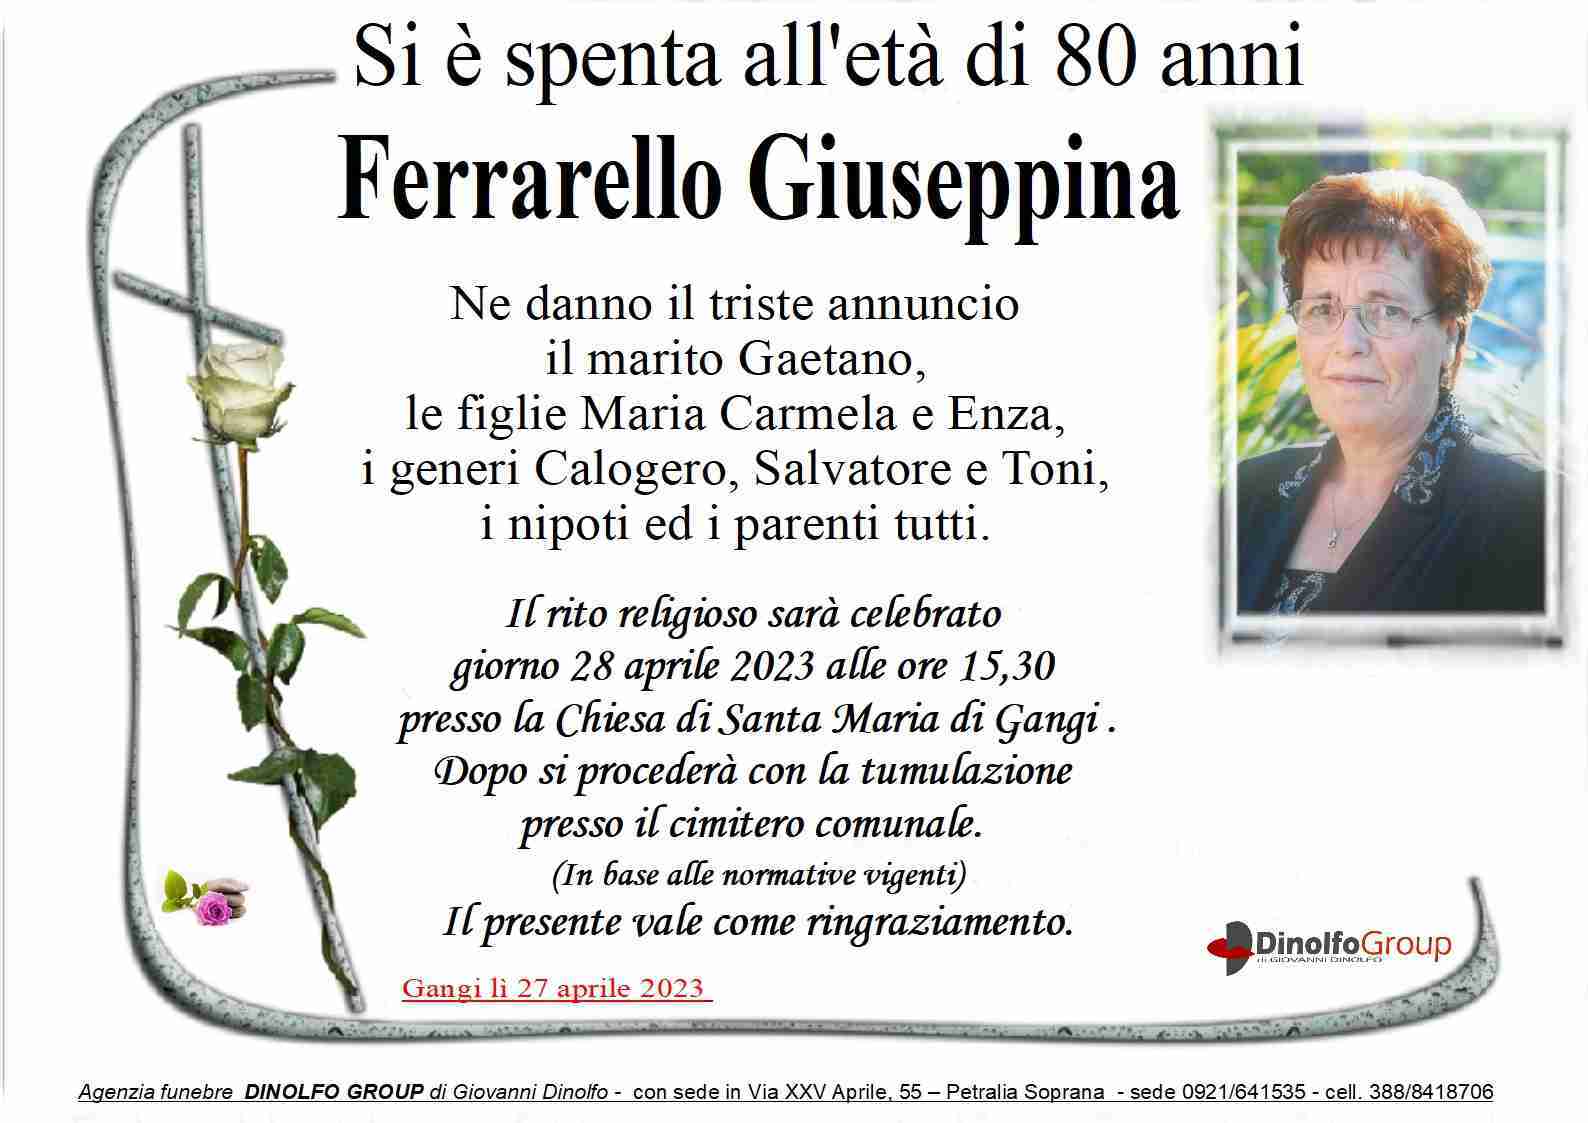 Giuseppina Ferrarello